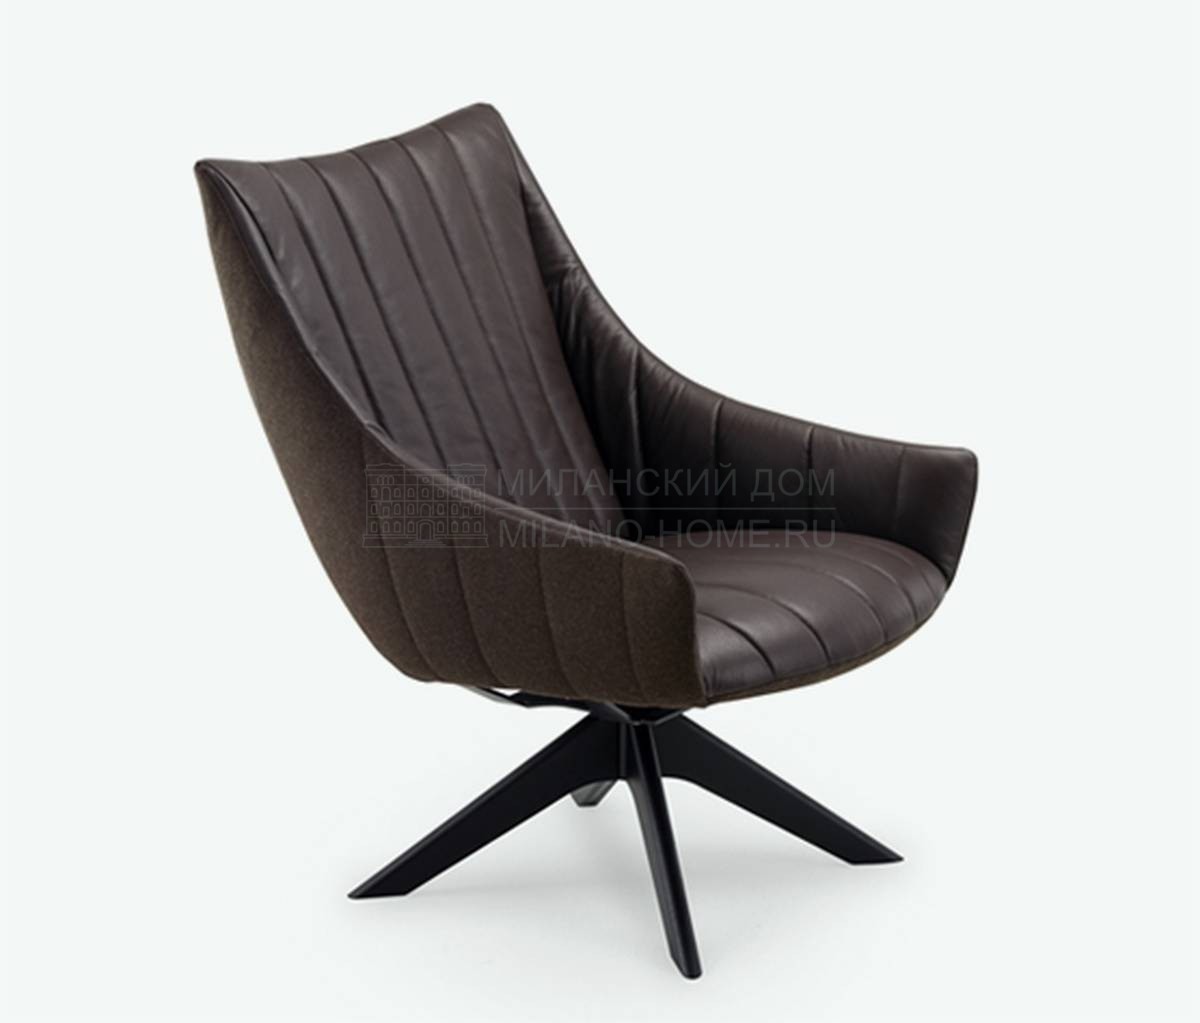 Кожаное кресло Ruble armchair brown leather из Германии фабрики FREIFRAU